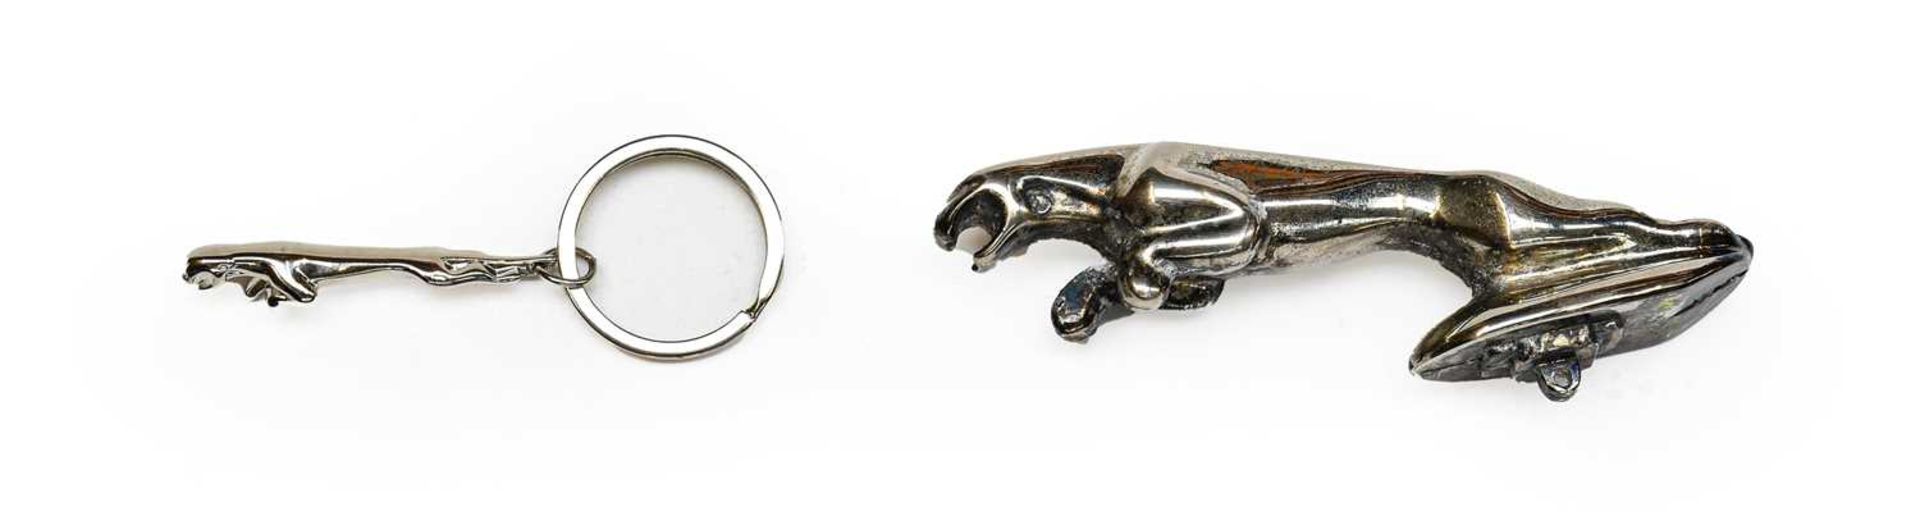 Jaguar Interest: A Chrome-Plated Jaguar Car Bonnet Mascot; and A Chrome-Plated Jaguar Keyring (2)